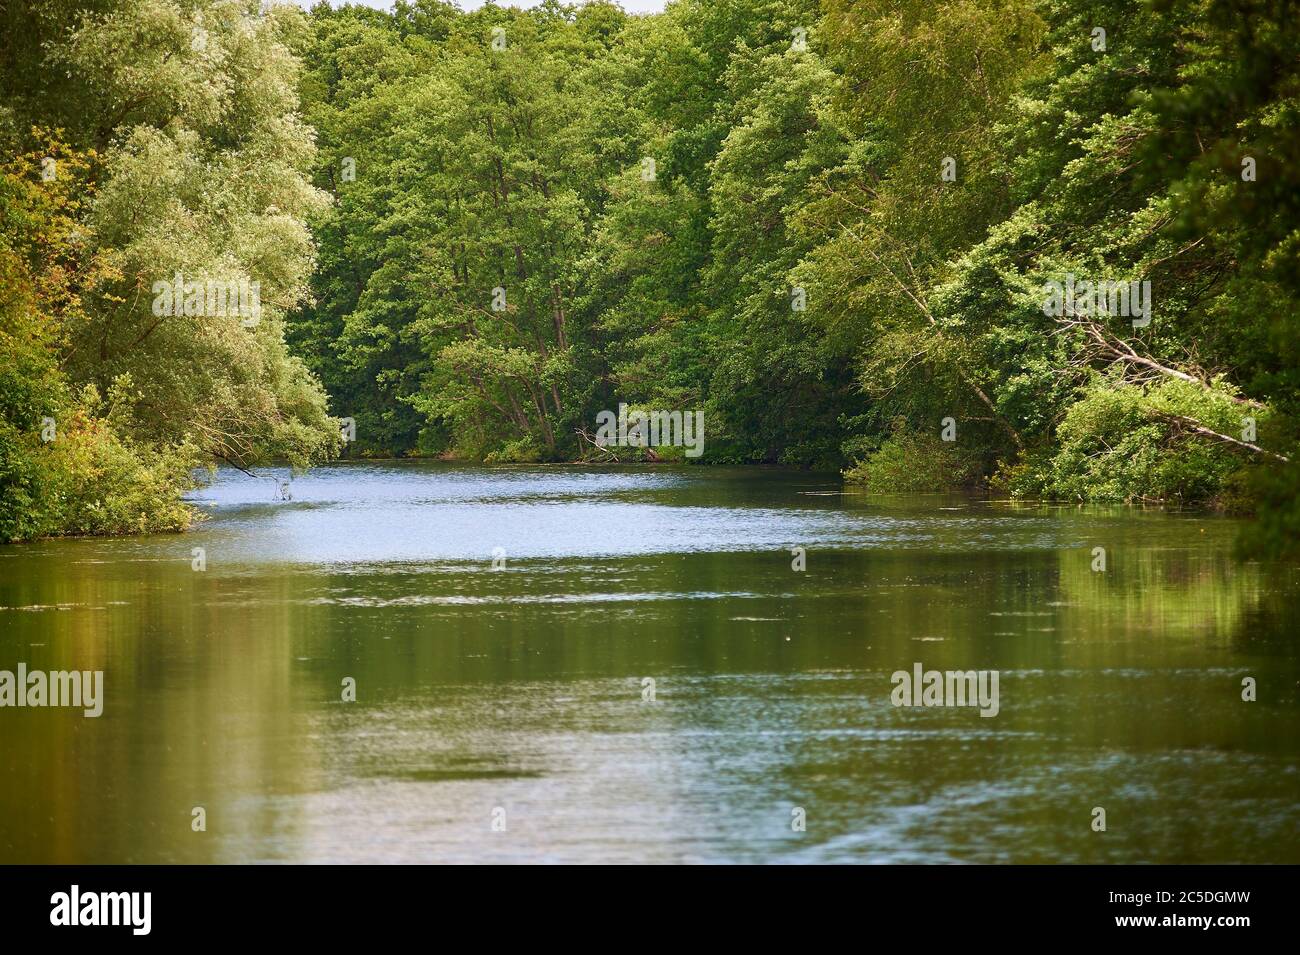 La rivière Wakenitz, également appelée Amazone du Nord, serpente du lac Ratzeburg à Lübeck, dans le nord de l'Allemagne Banque D'Images